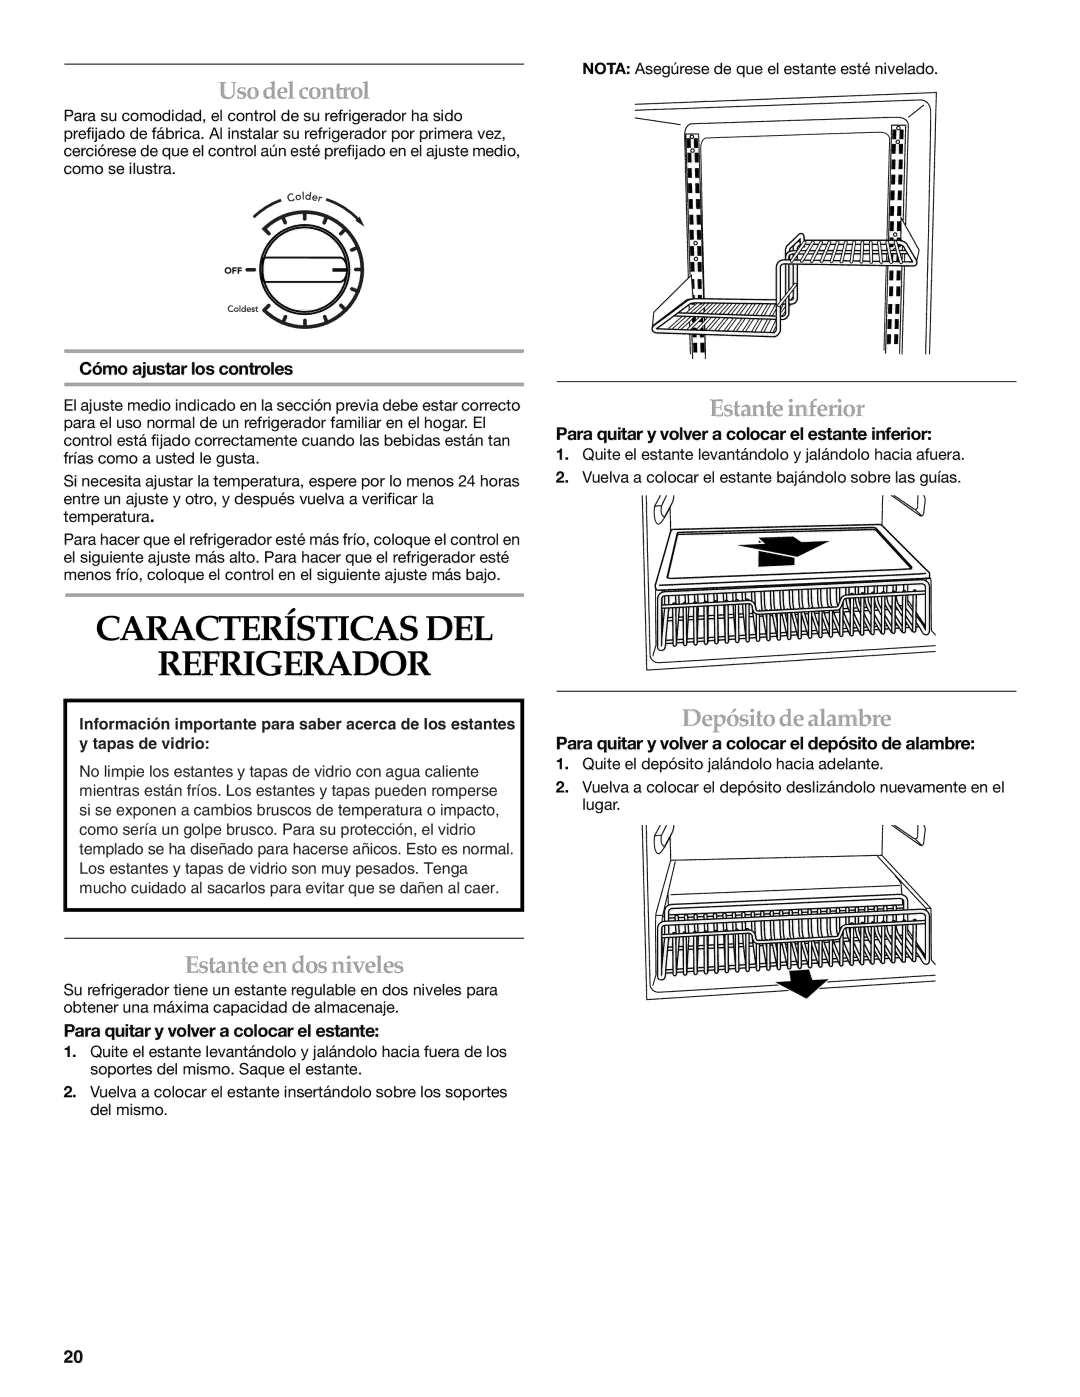 KitchenAid KURO24LSBX manual Características DEL Refrigerador, Uso del control, Estante en dos niveles, Estante inferior 